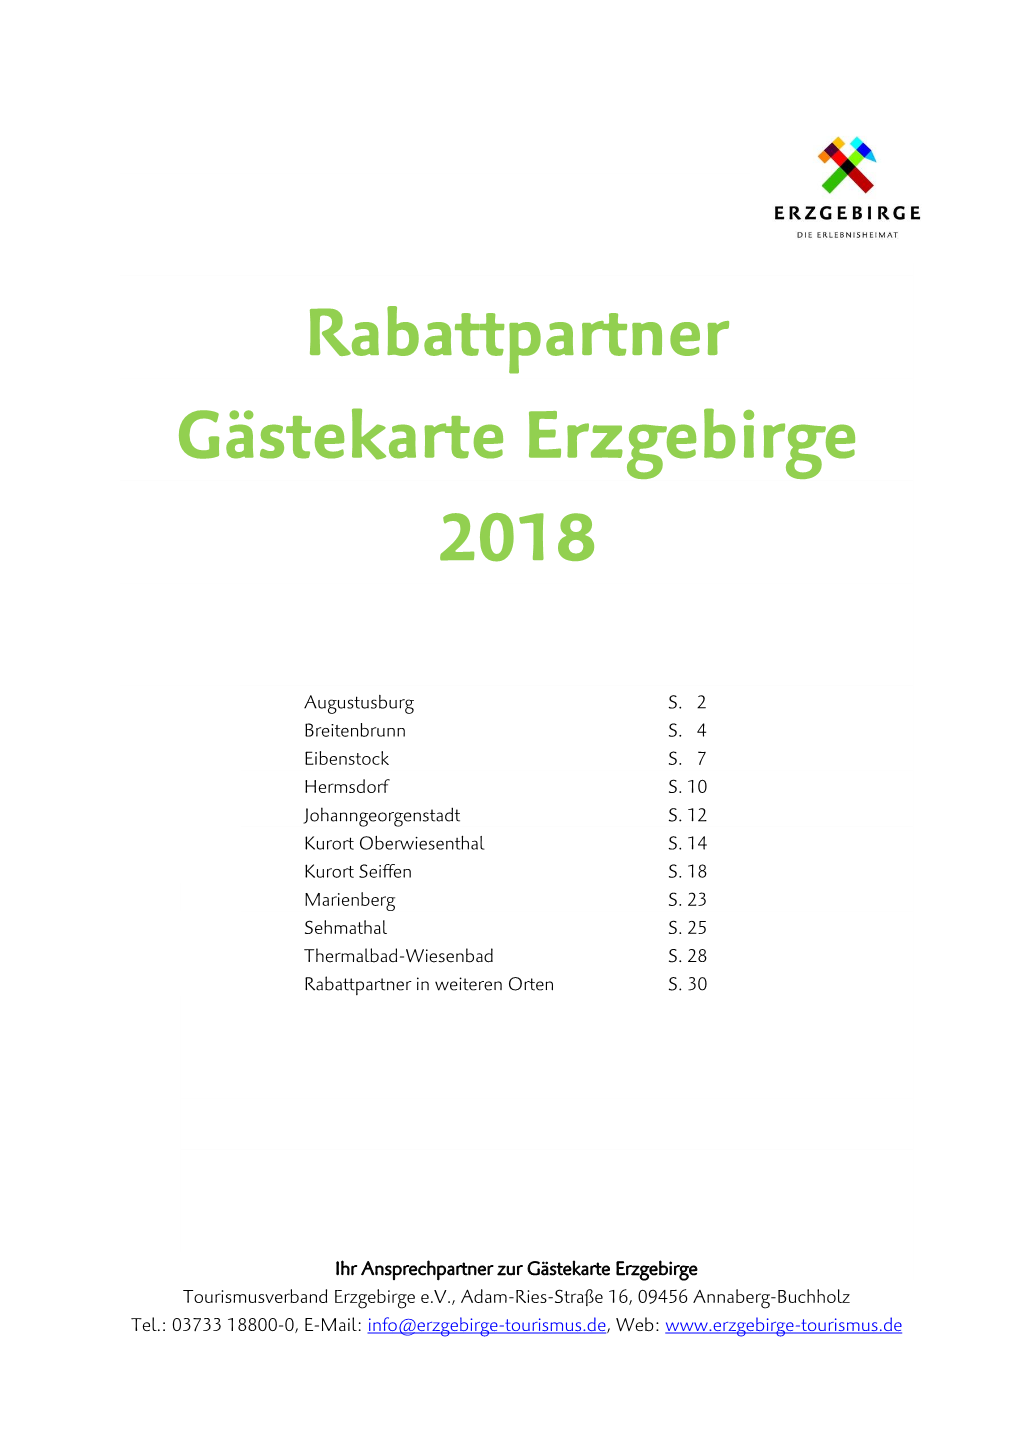 Rabattpartner Gästekarte Erzgebirge 2018